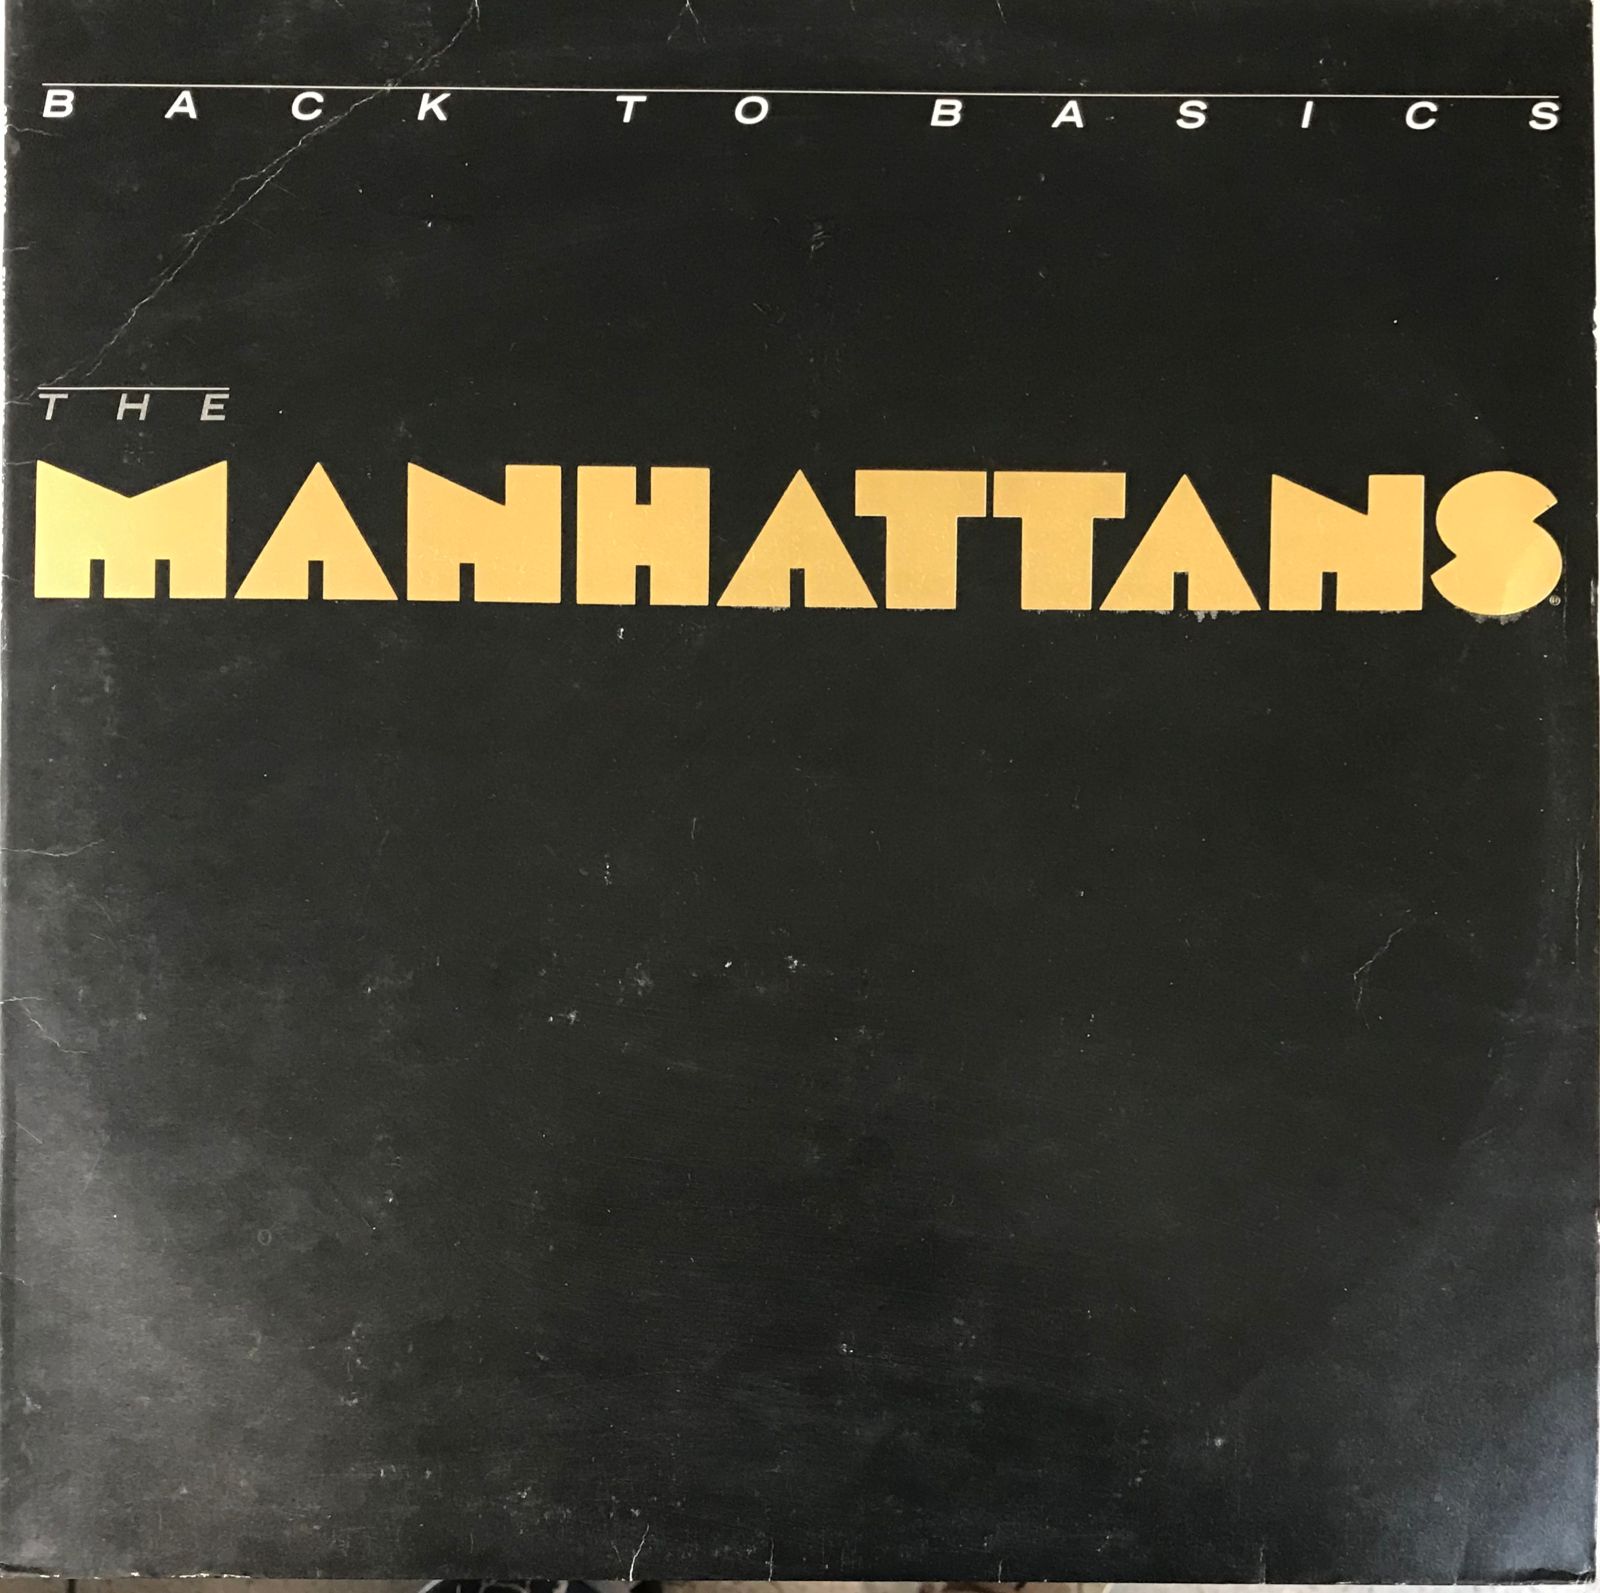 LP The Manhattans – Back To Basics